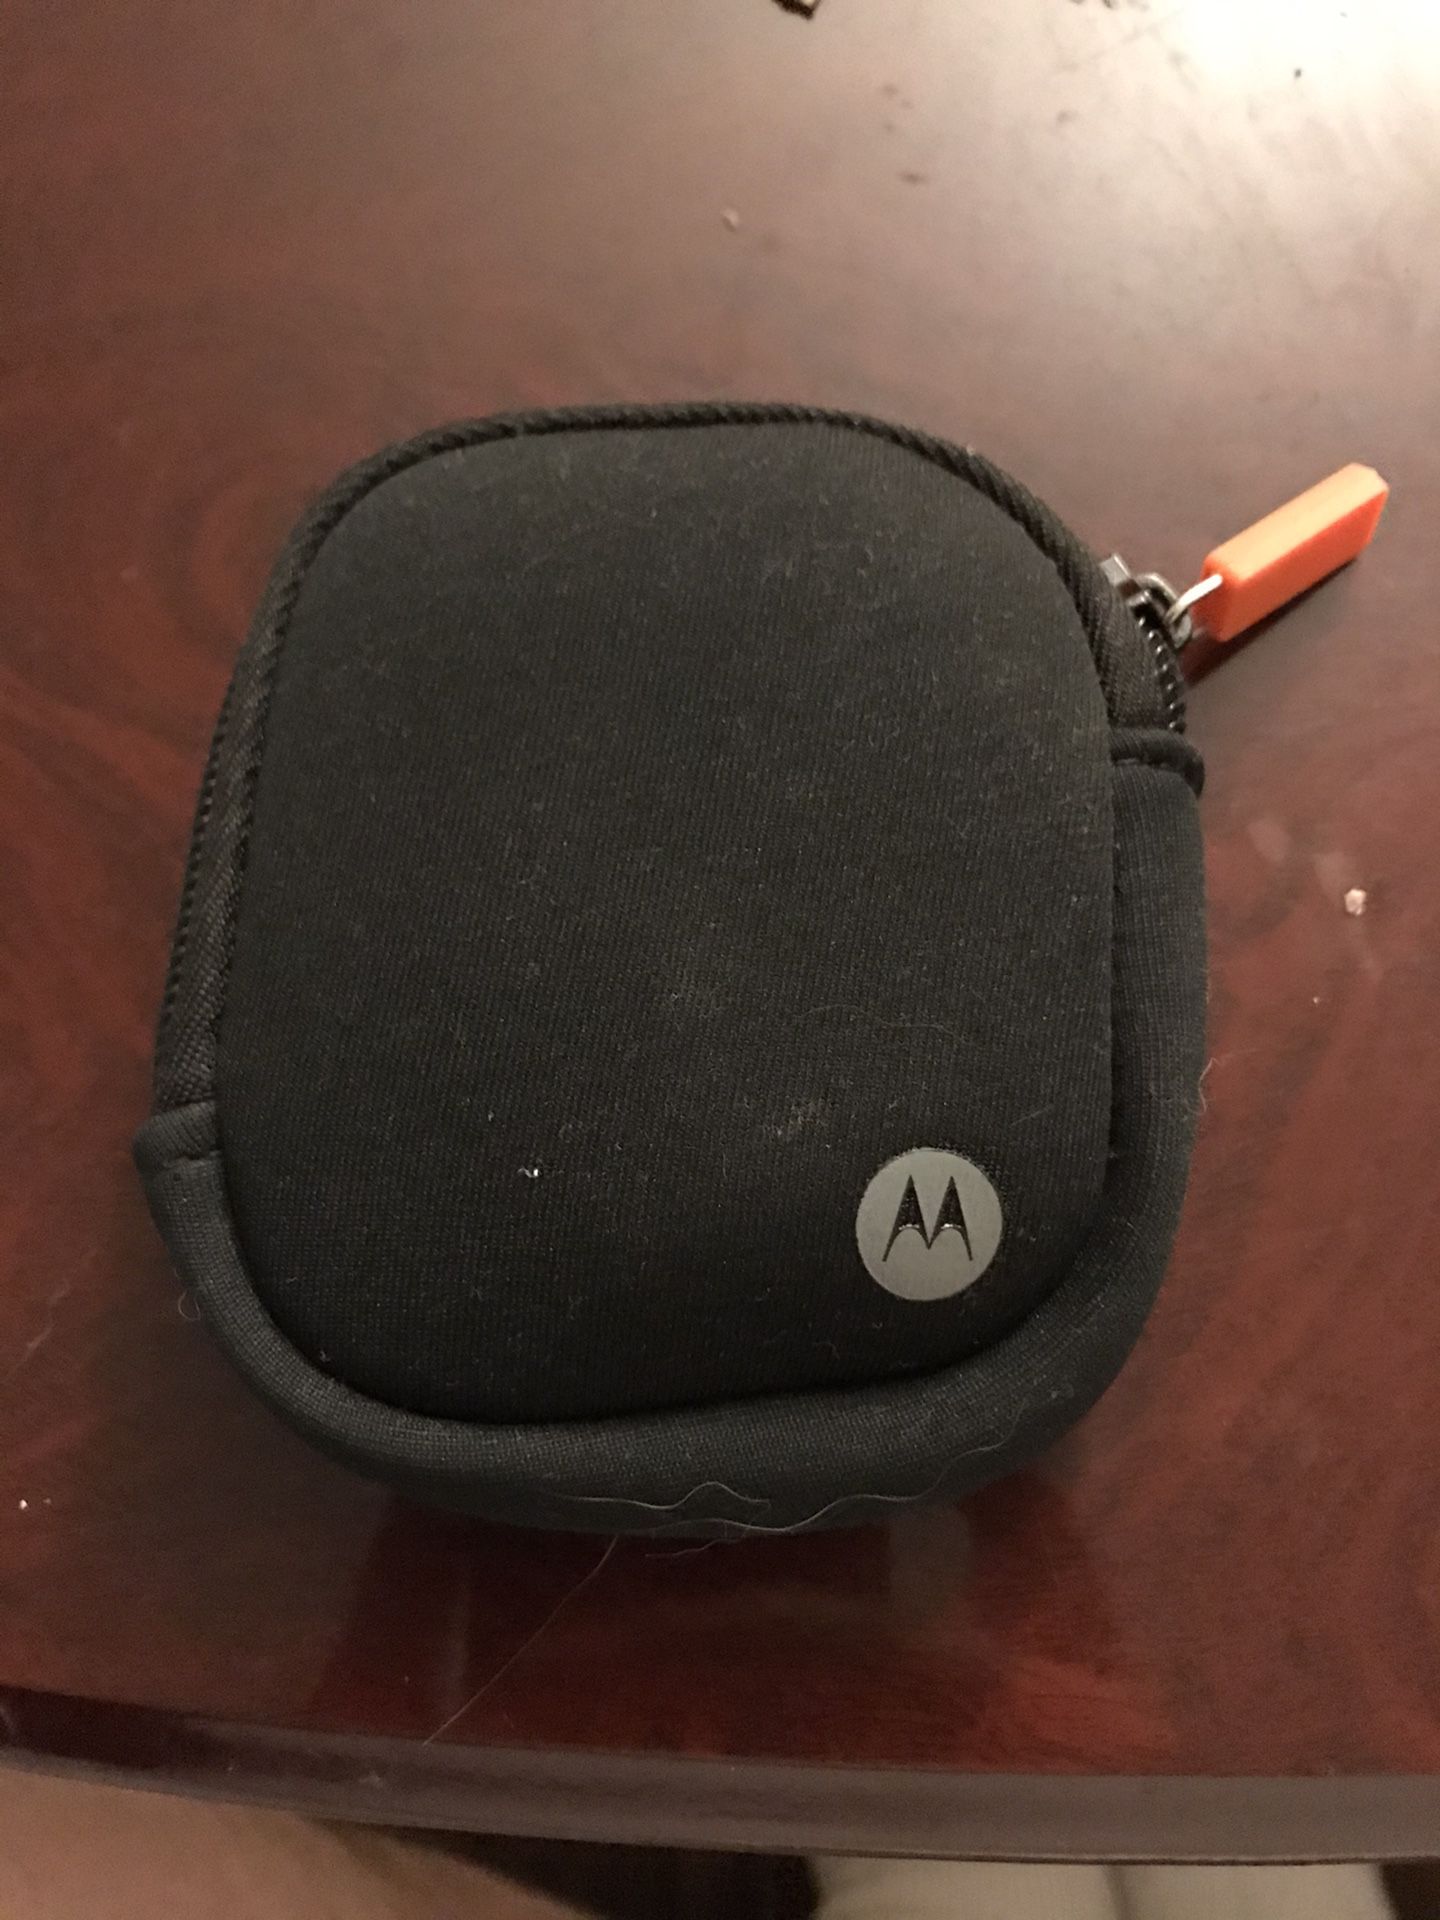 Motorola Verge Loop + Wireless Headphone